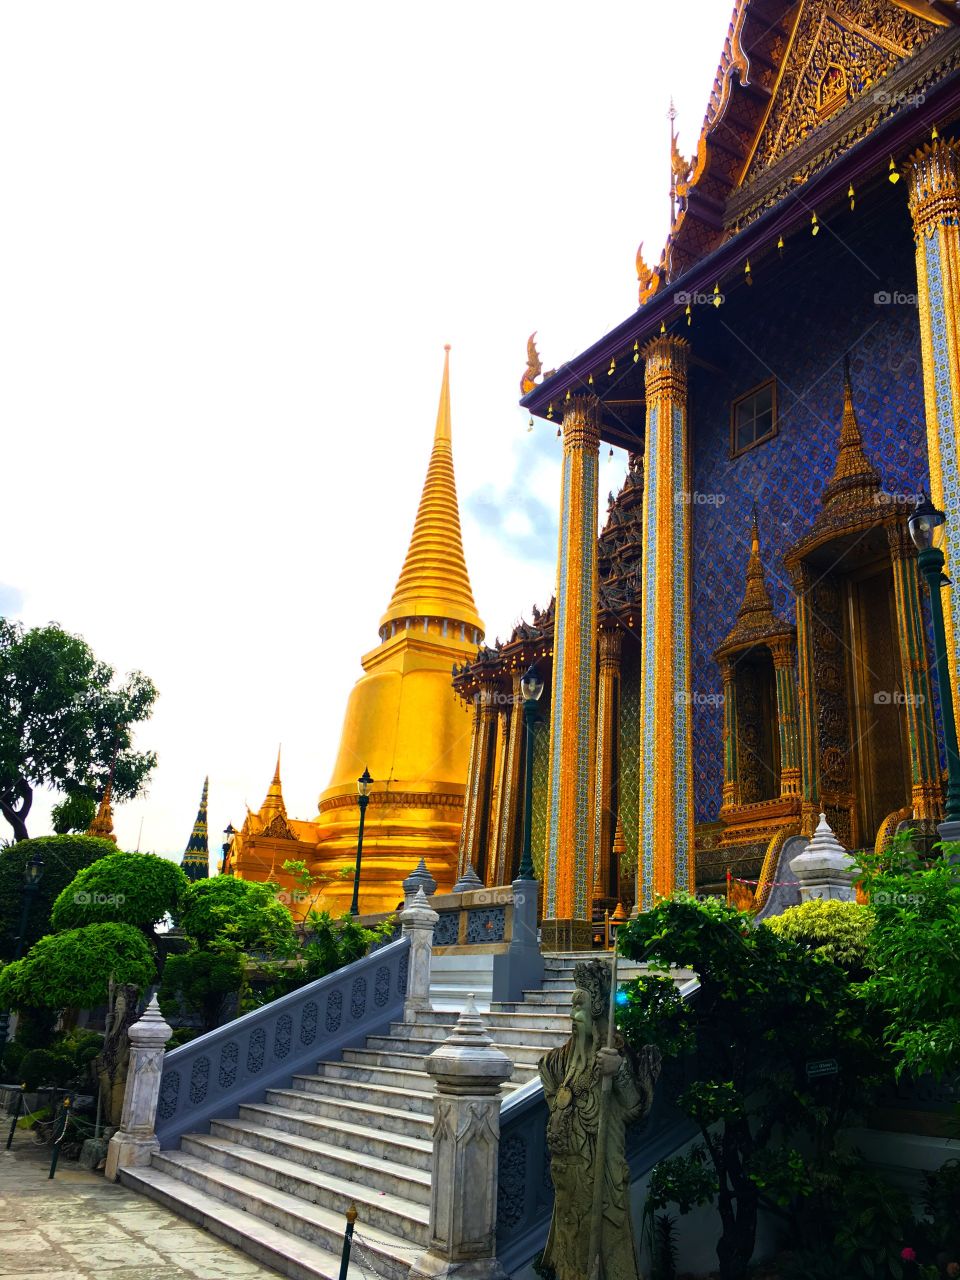 Grand Palace / Bangkok Thailand 5